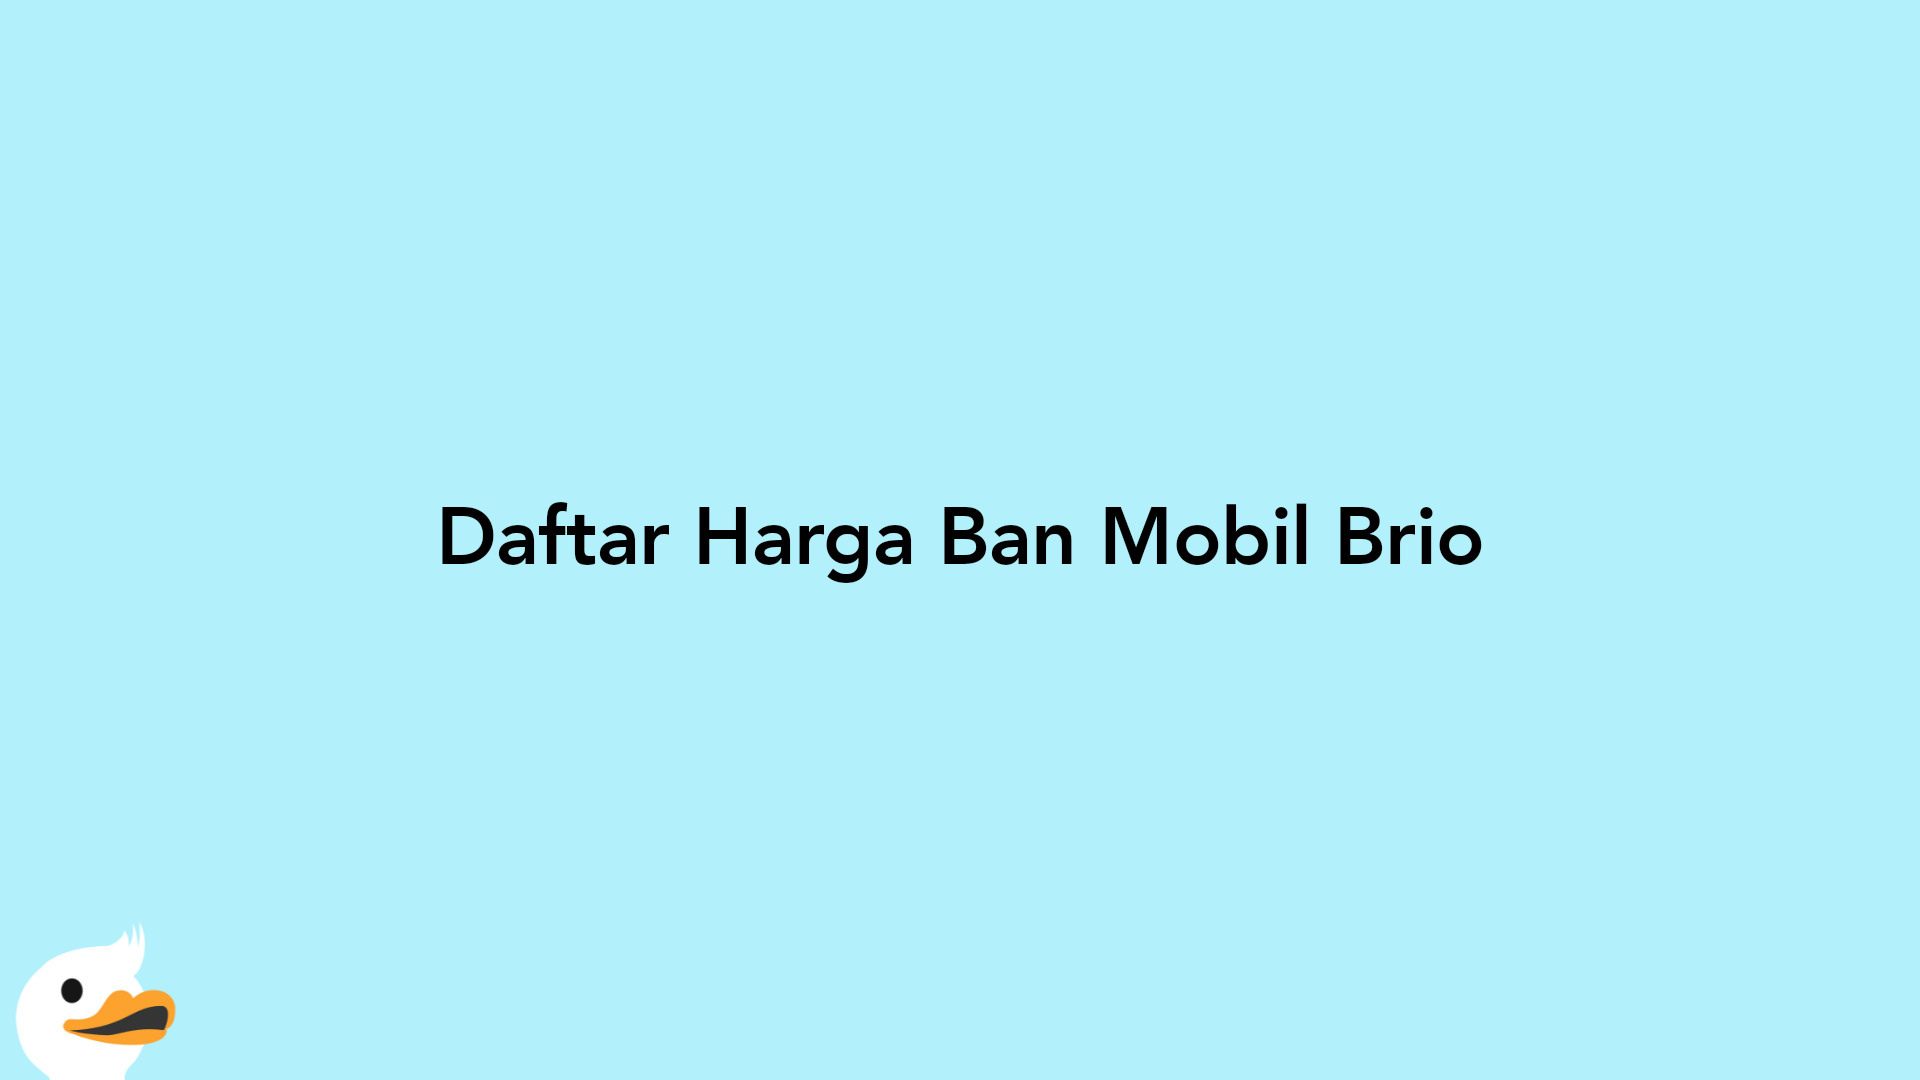 Daftar Harga Ban Mobil Brio